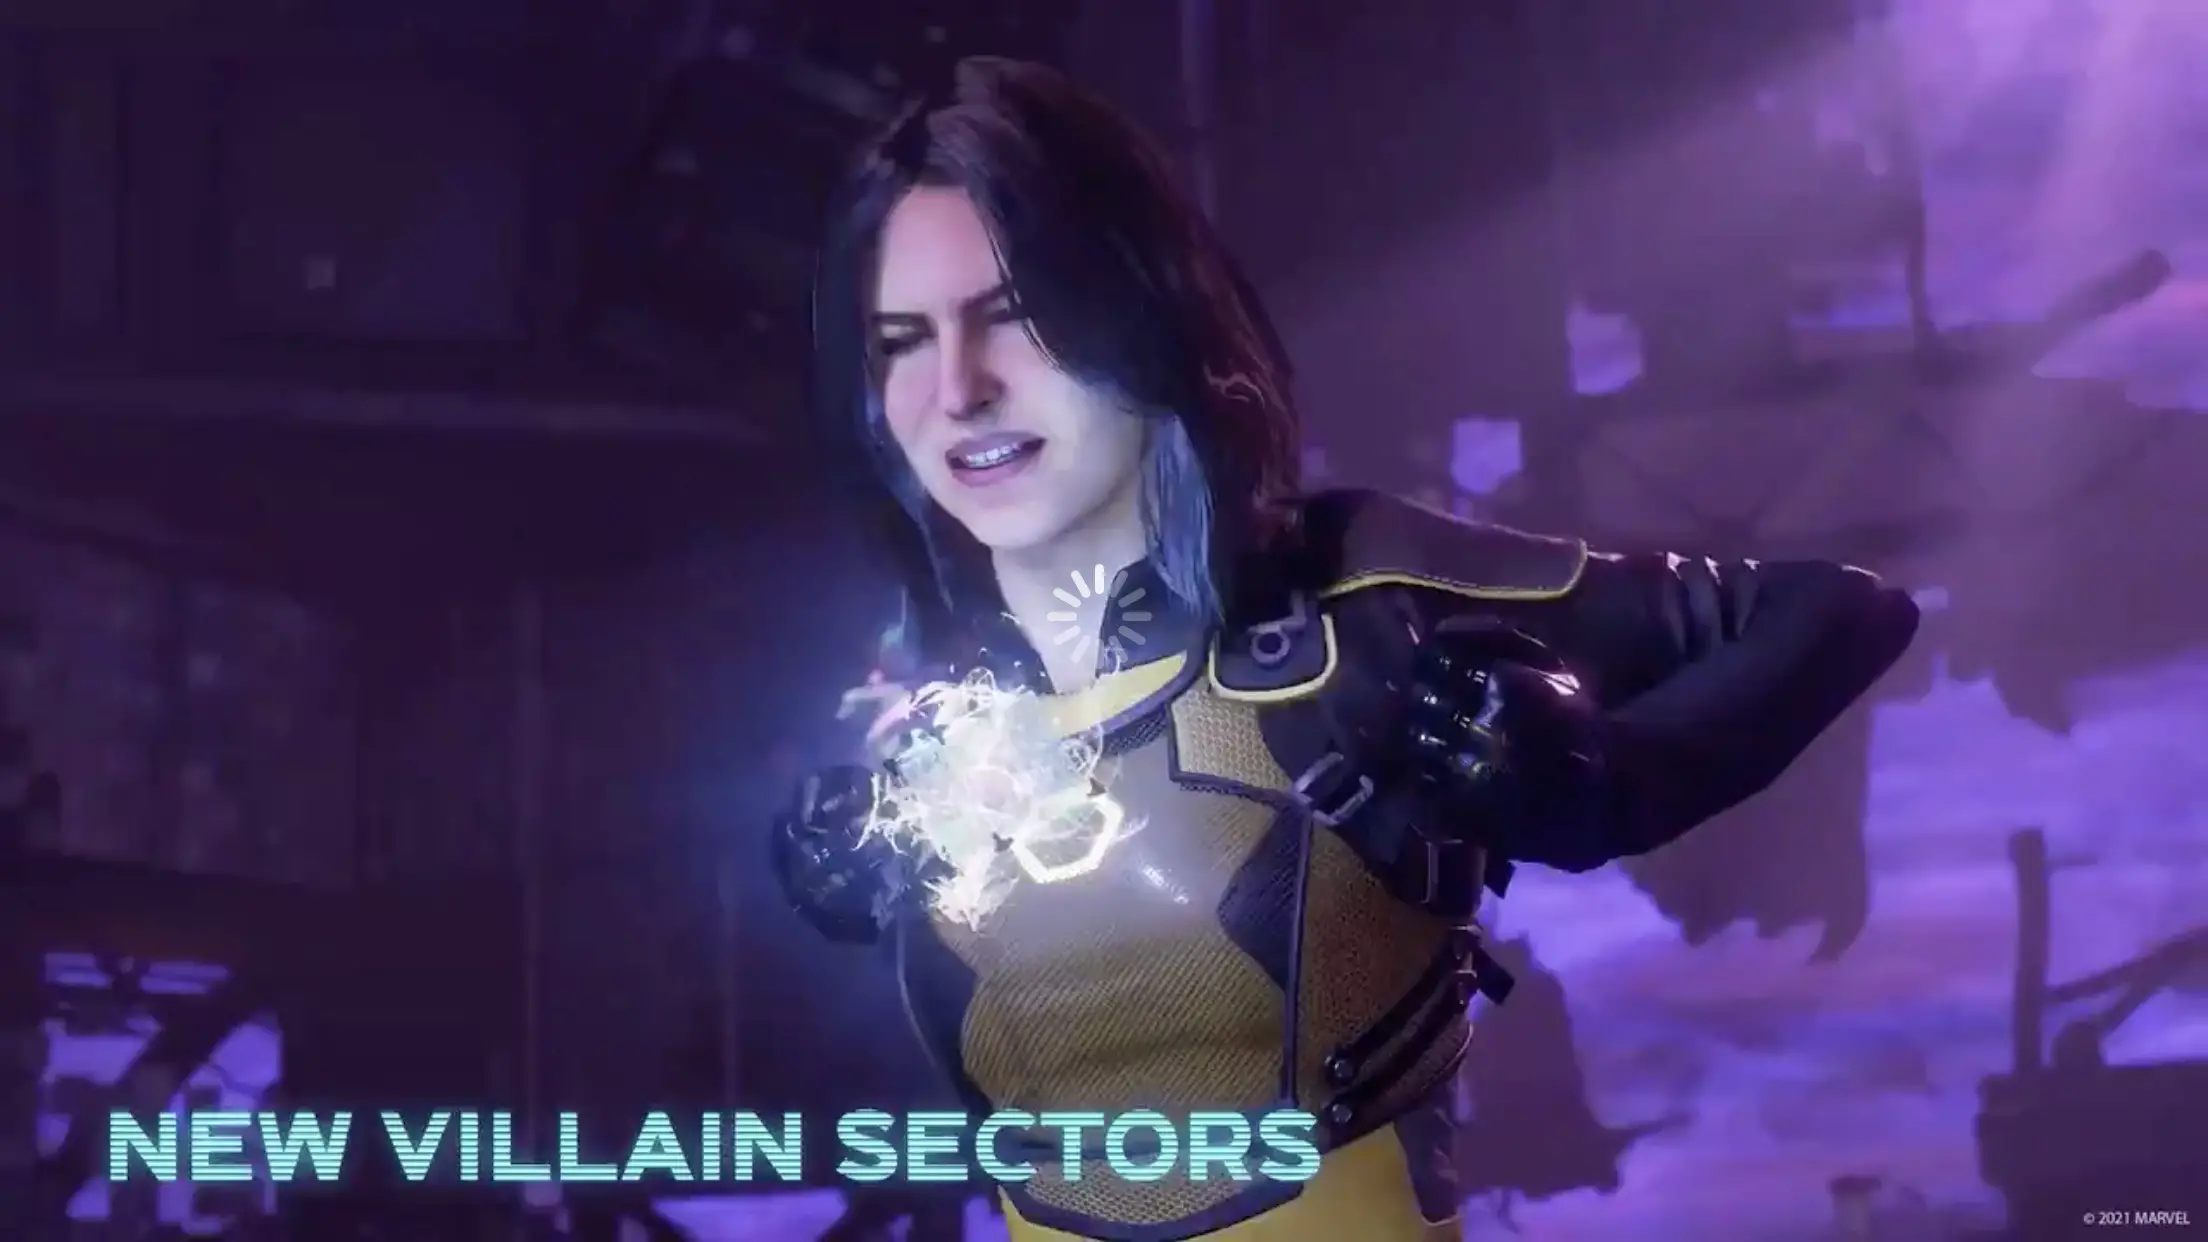 Villain Sector